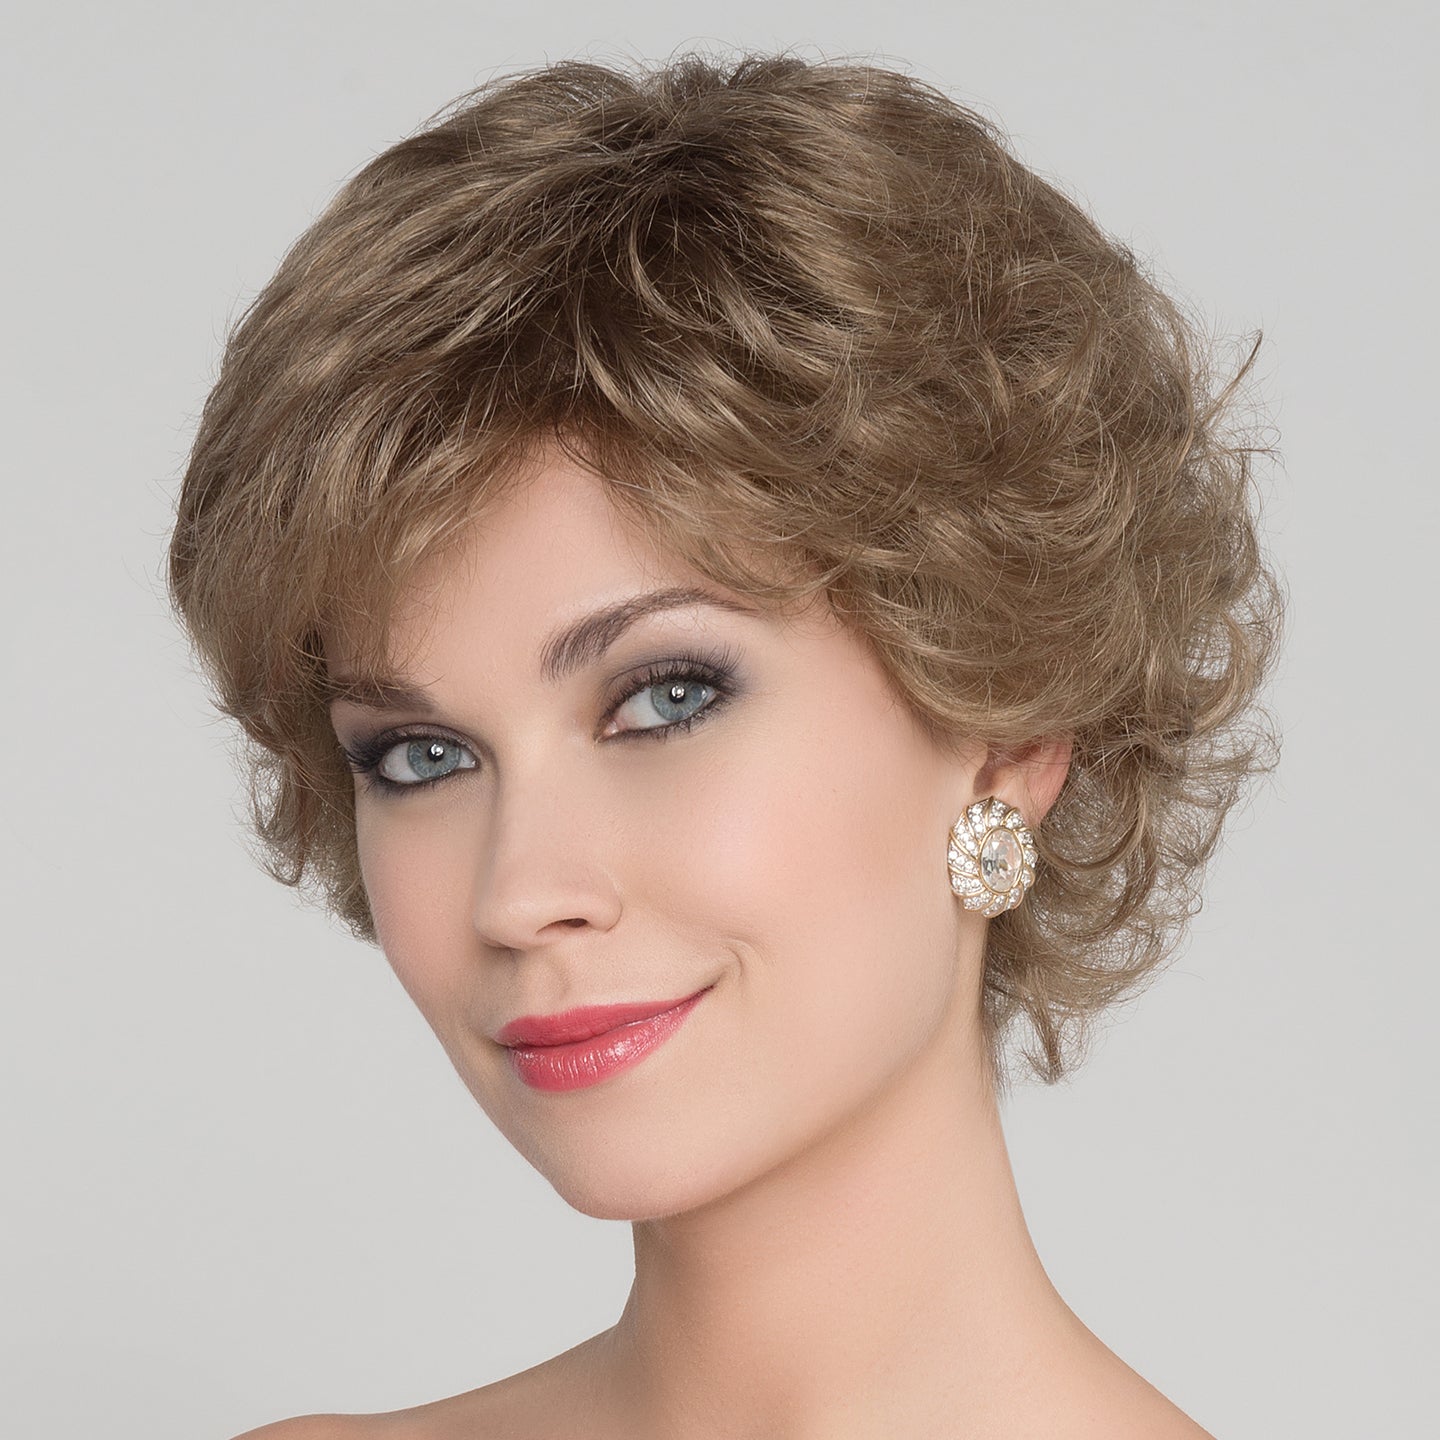 Aurora Comfort Wig - Ellen Wille HairPower Collection